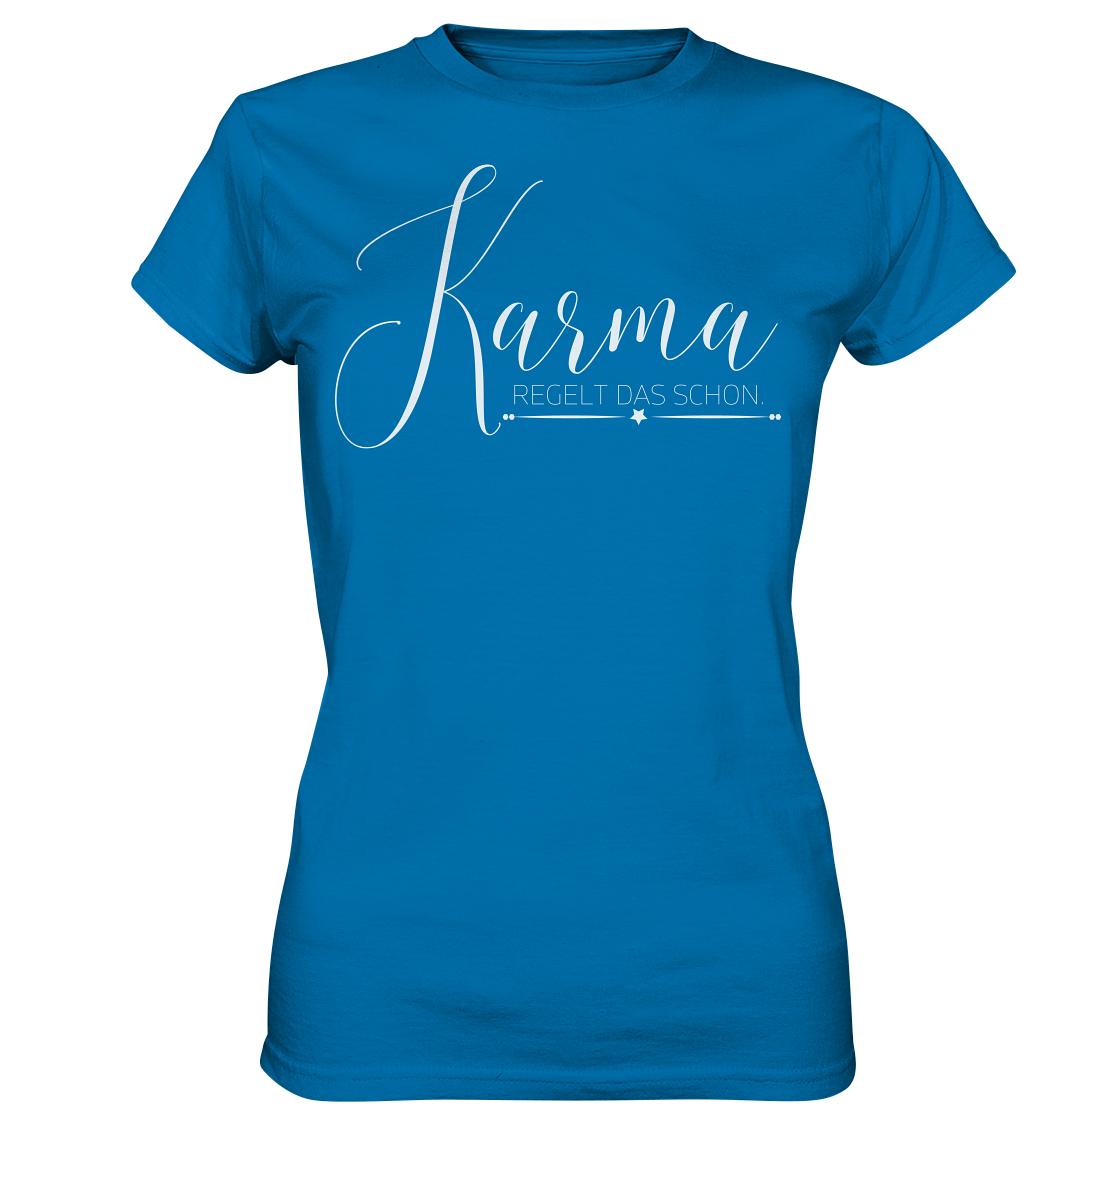 Karma regelt das schon - Ladies Premium Shirt